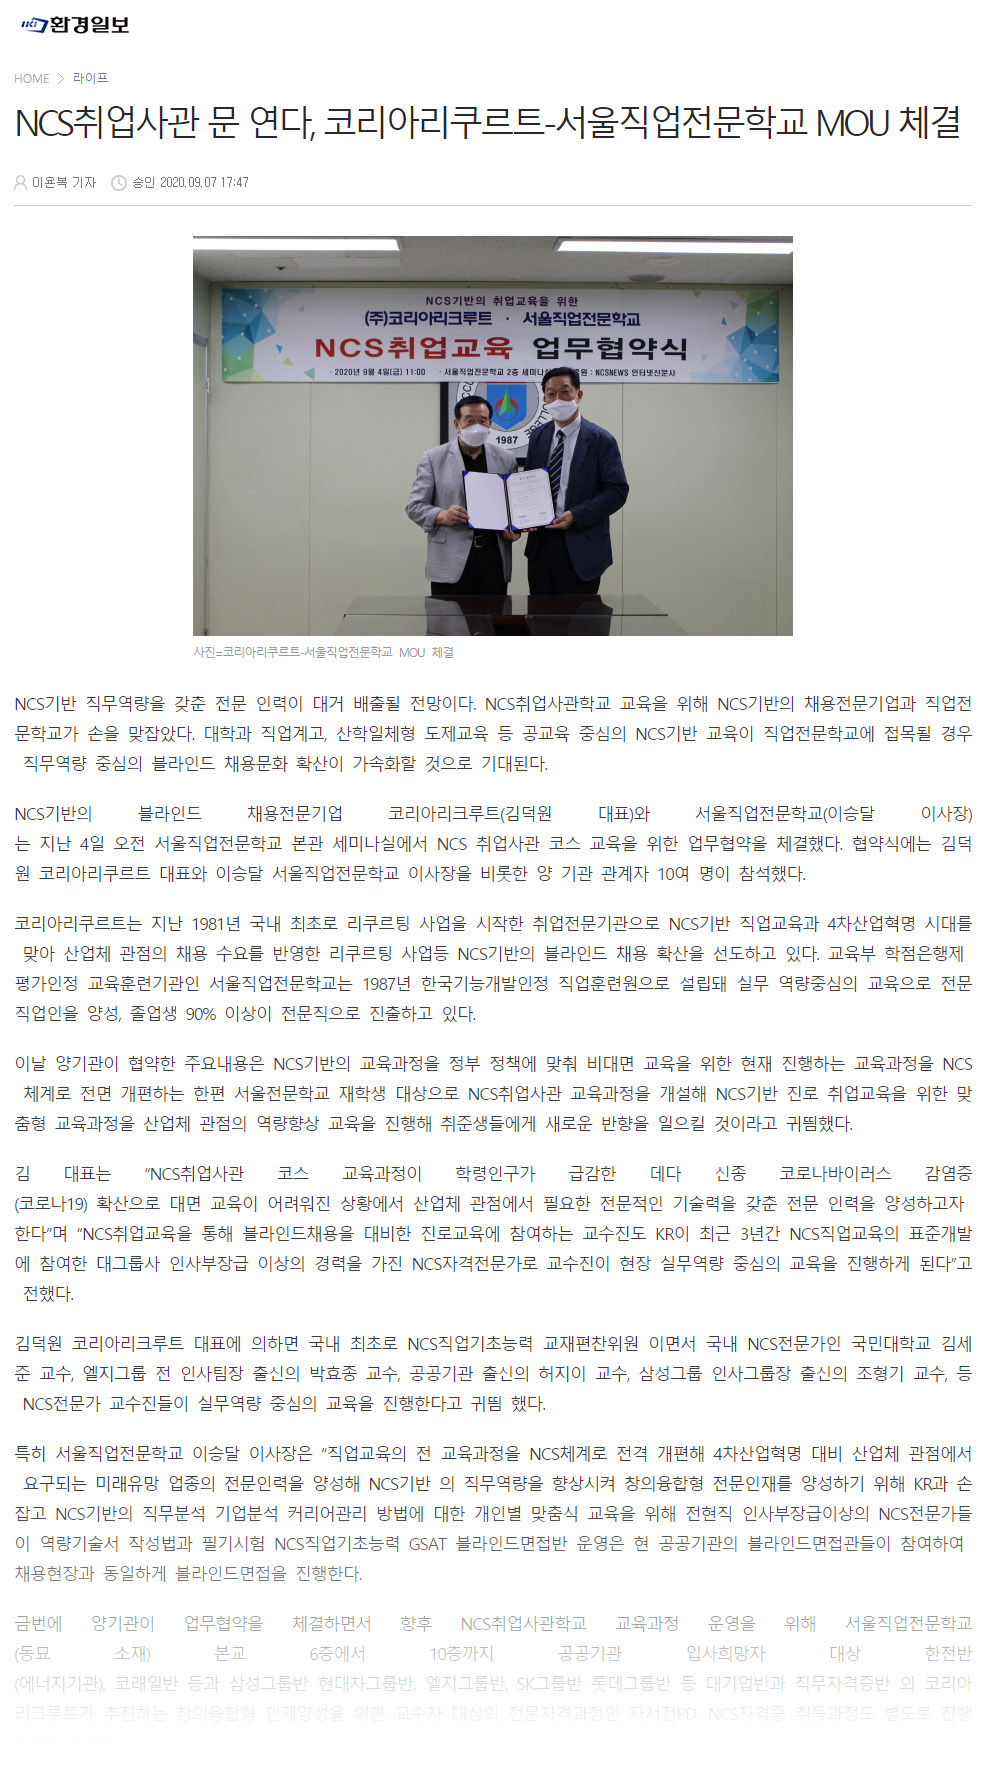 [환경일보] NCS취업사관 문 연다, 코리아리쿠르트-서울직업전문학교 MOU 체결